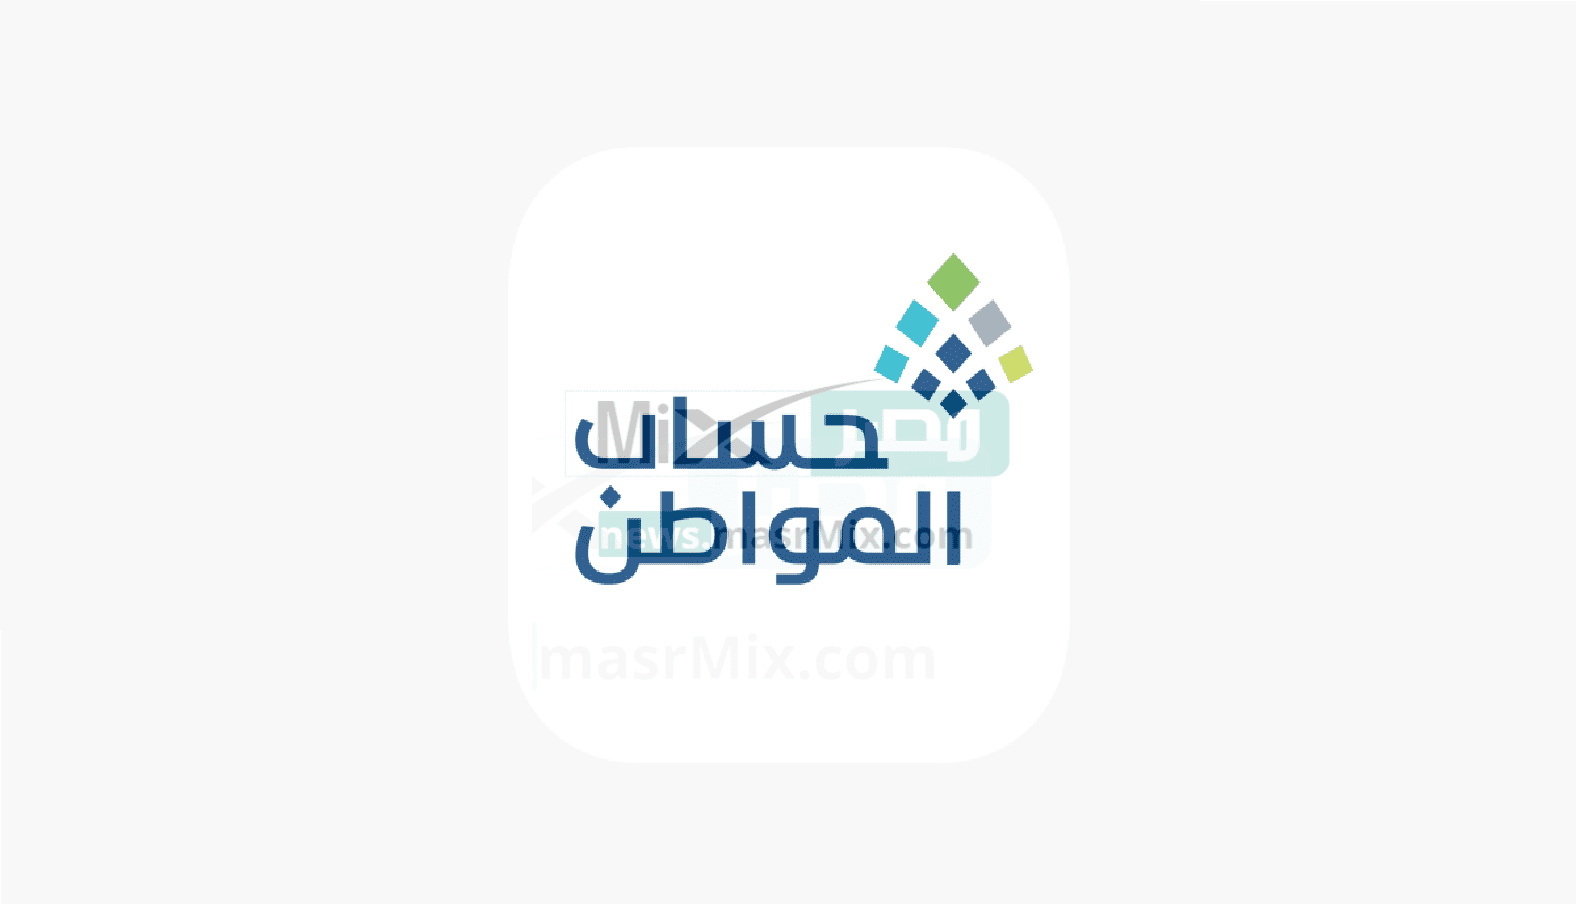 1200x630wa 1 - مدونة التقنية العربية